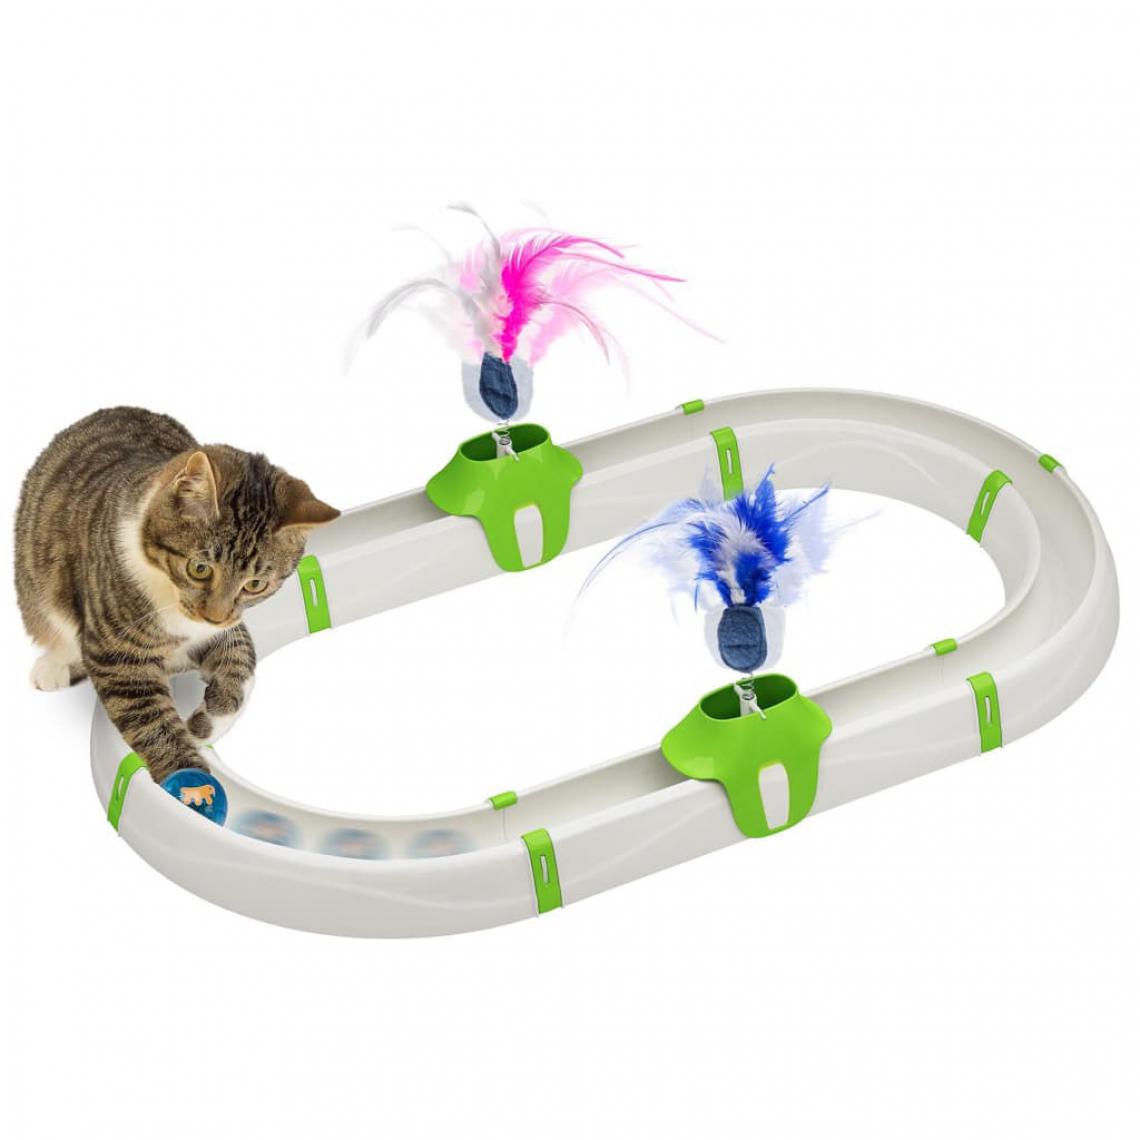 Ferplast - Ferplast Jouet pour chat Amusement en circuit Turbine Blanc - Jouet pour chien